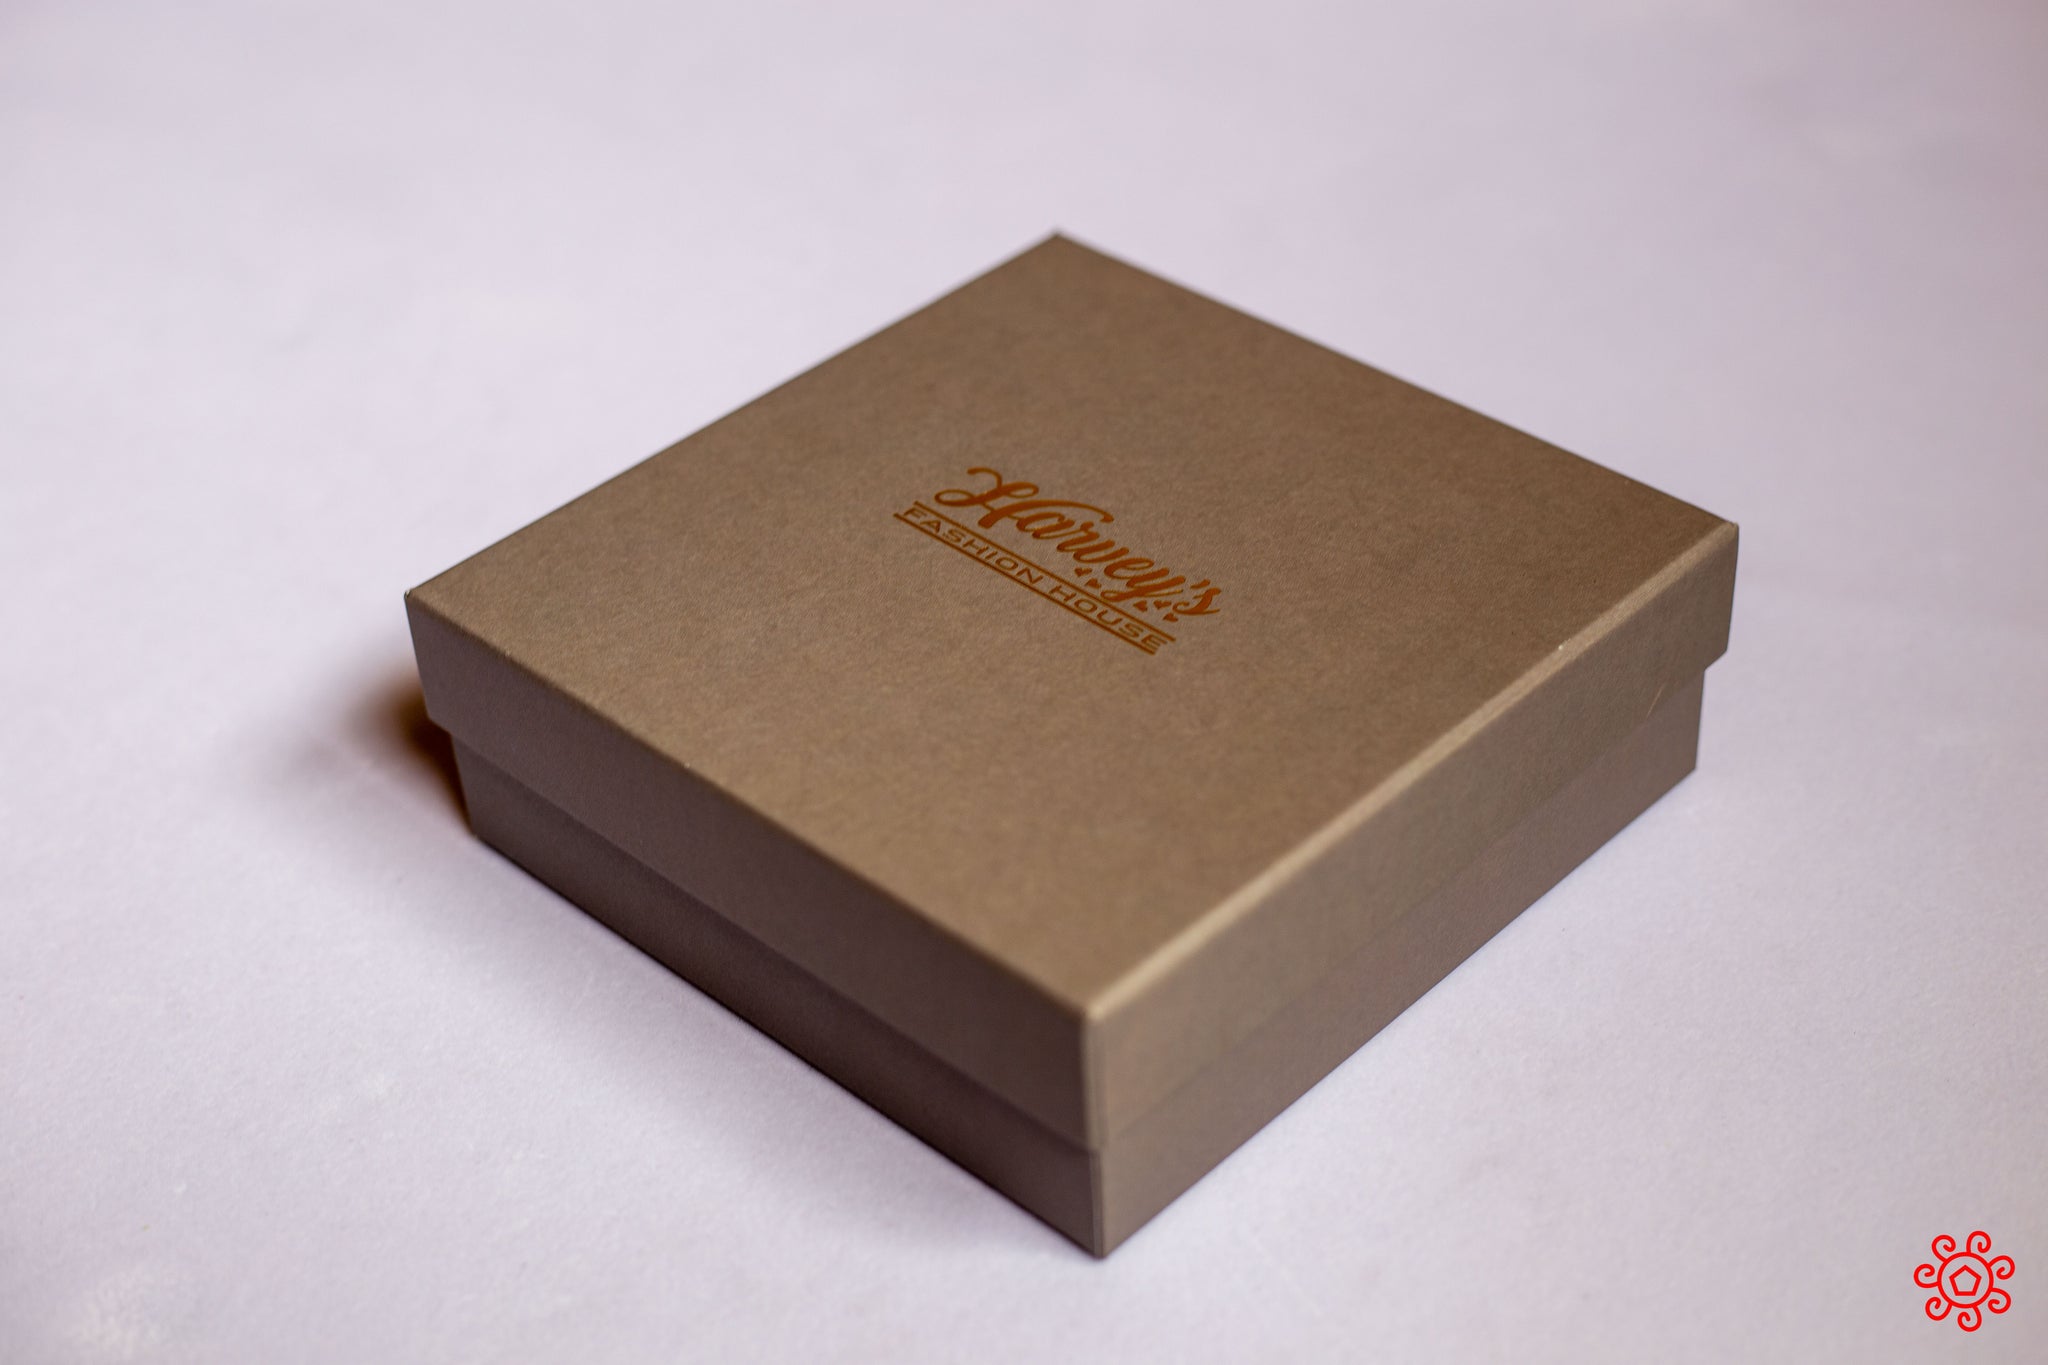 Handmade Jewelry Box - HDBX113